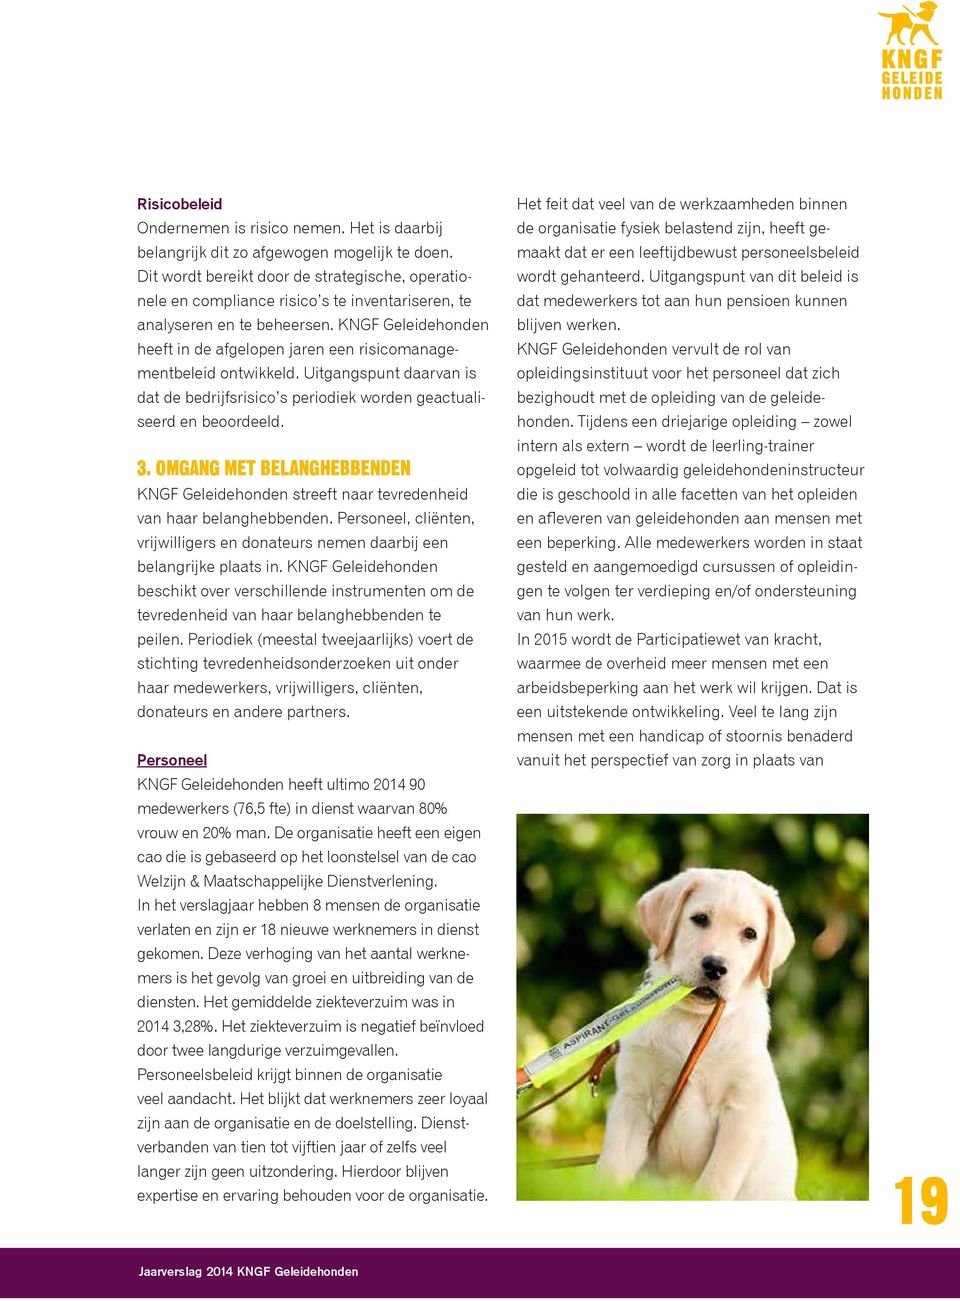 KNGF Geleidehonden heeft in de afgelopen jaren een risicomanagementbeleid ontwikkeld. Uitgangspunt daarvan is dat de bedrijfsrisico s periodiek worden geactualiseerd en beoordeeld. 3.